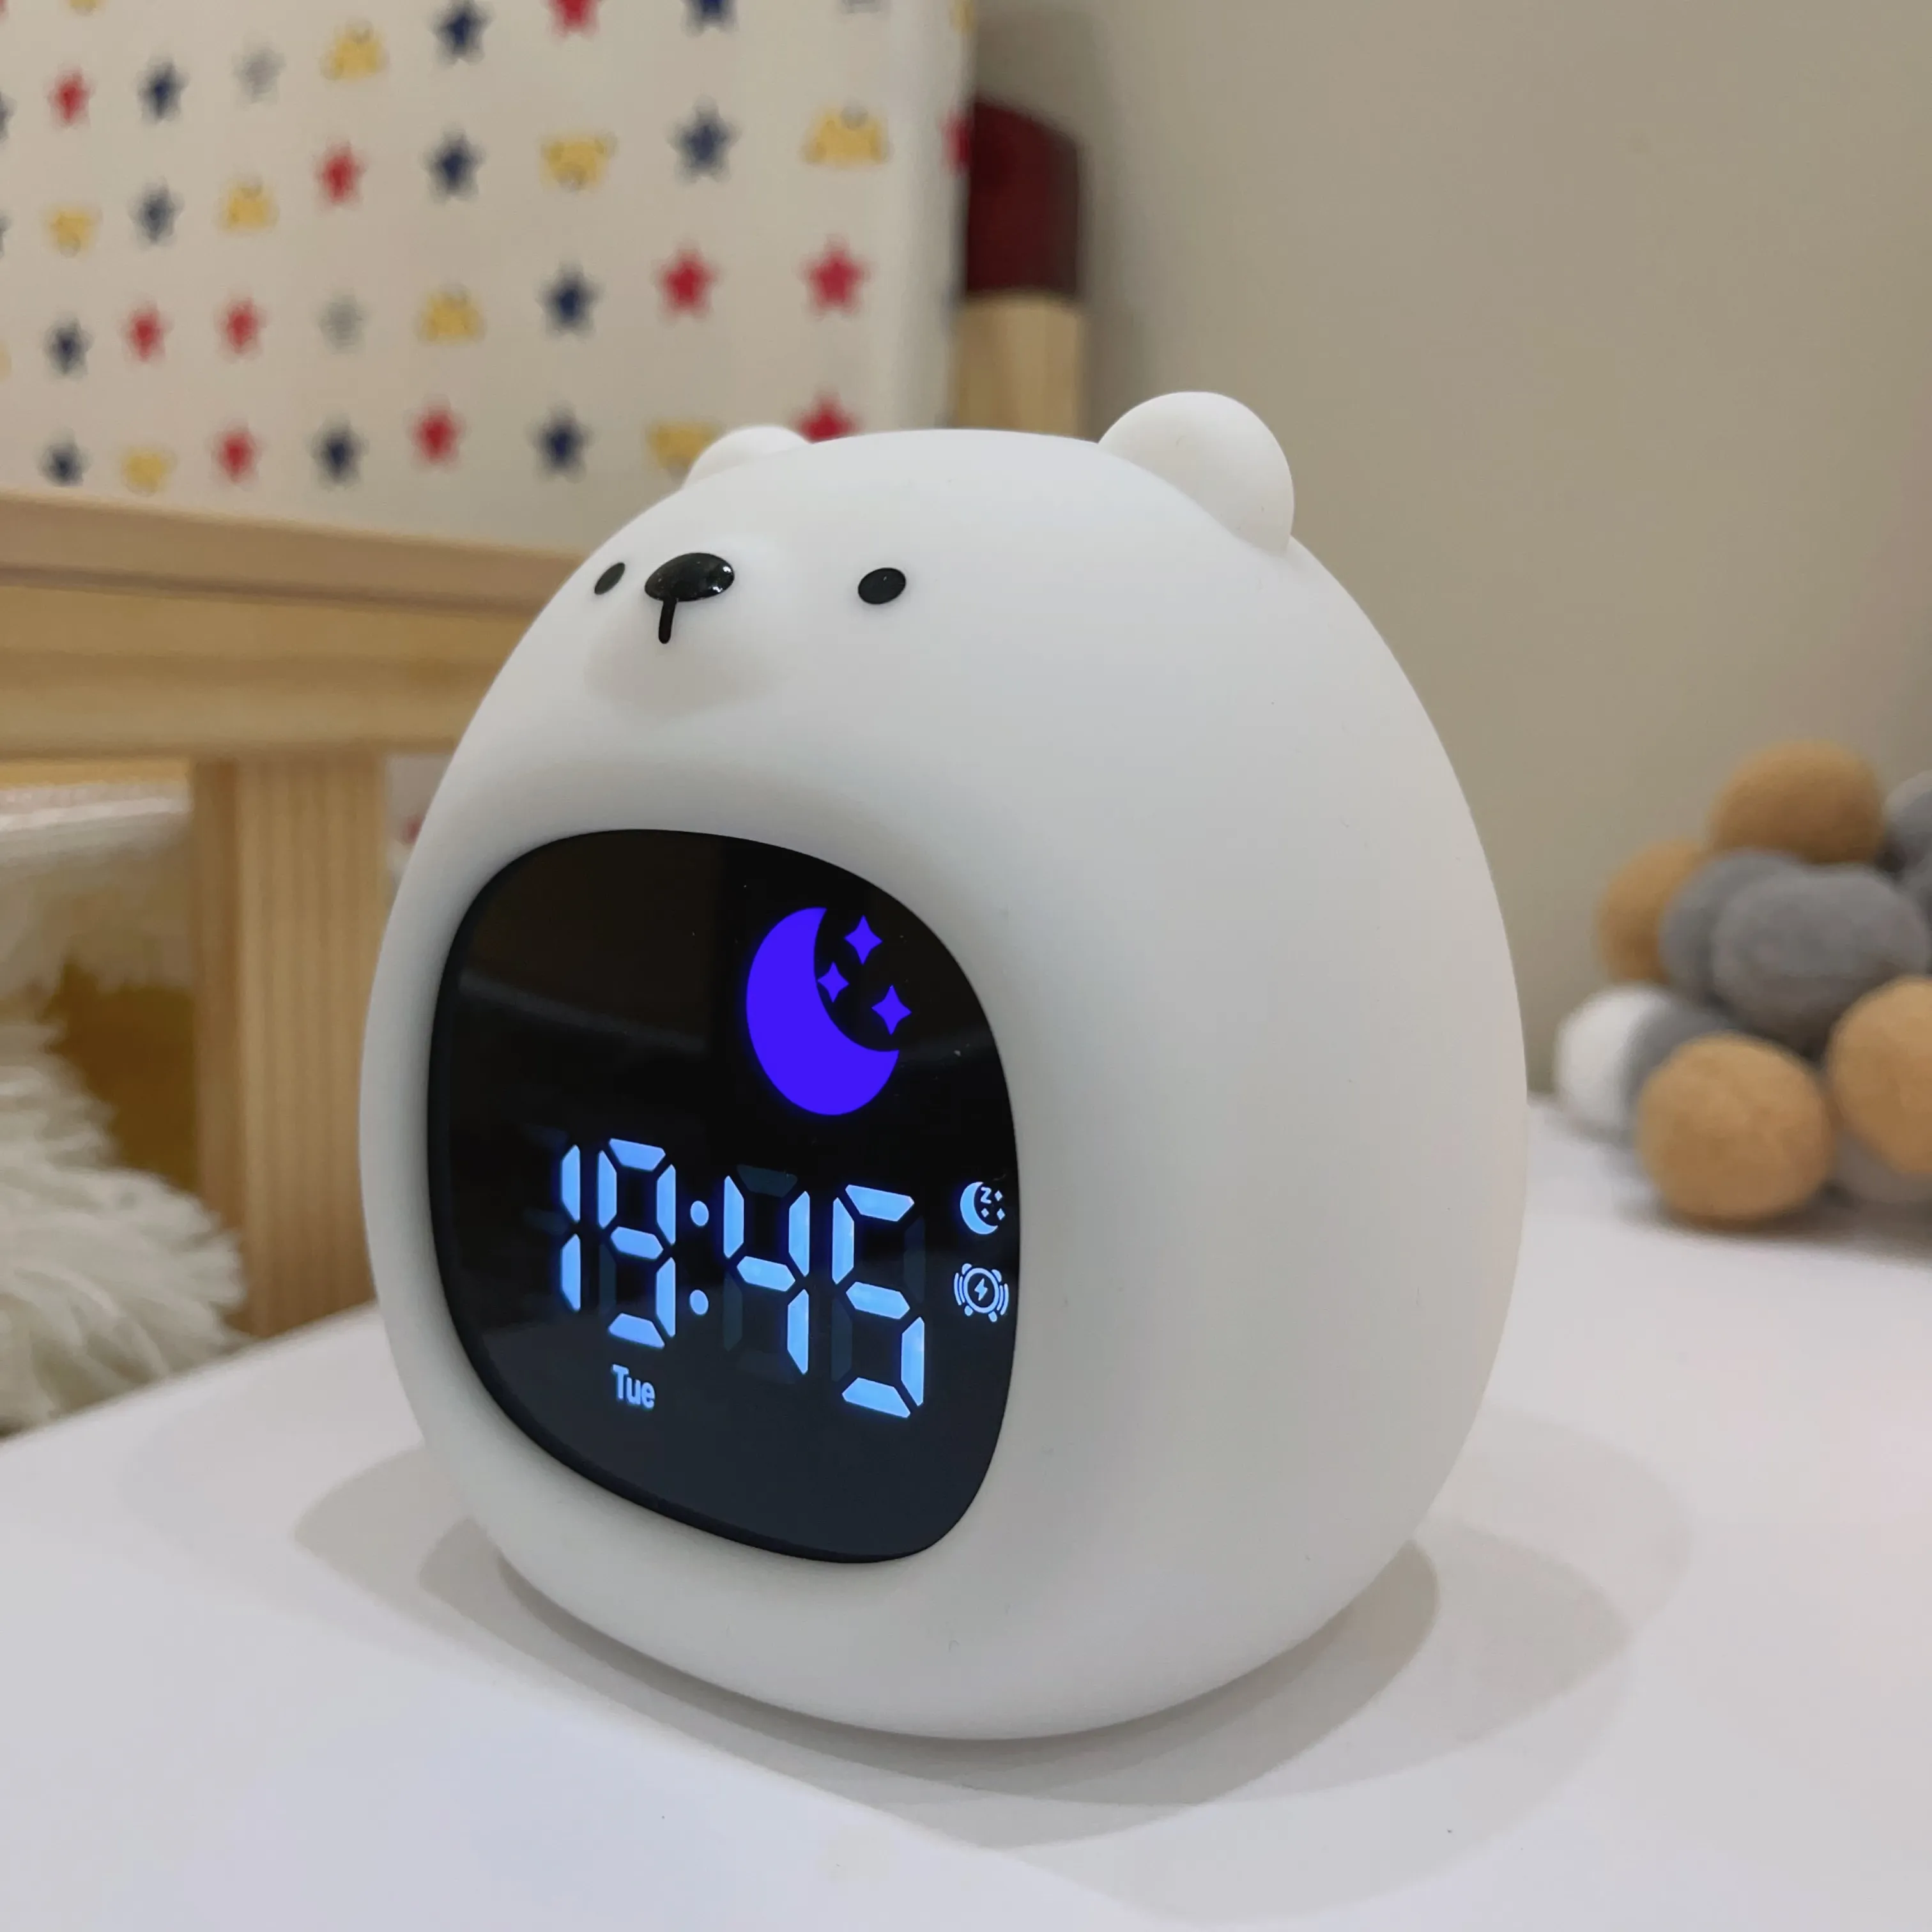 Großhandel Schlaf-Trainingsuhr mit Sonne Mond LED großes Display Schlaf-Schallgerät mit Baby-Nachtlicht Digitaluhr für Kinder